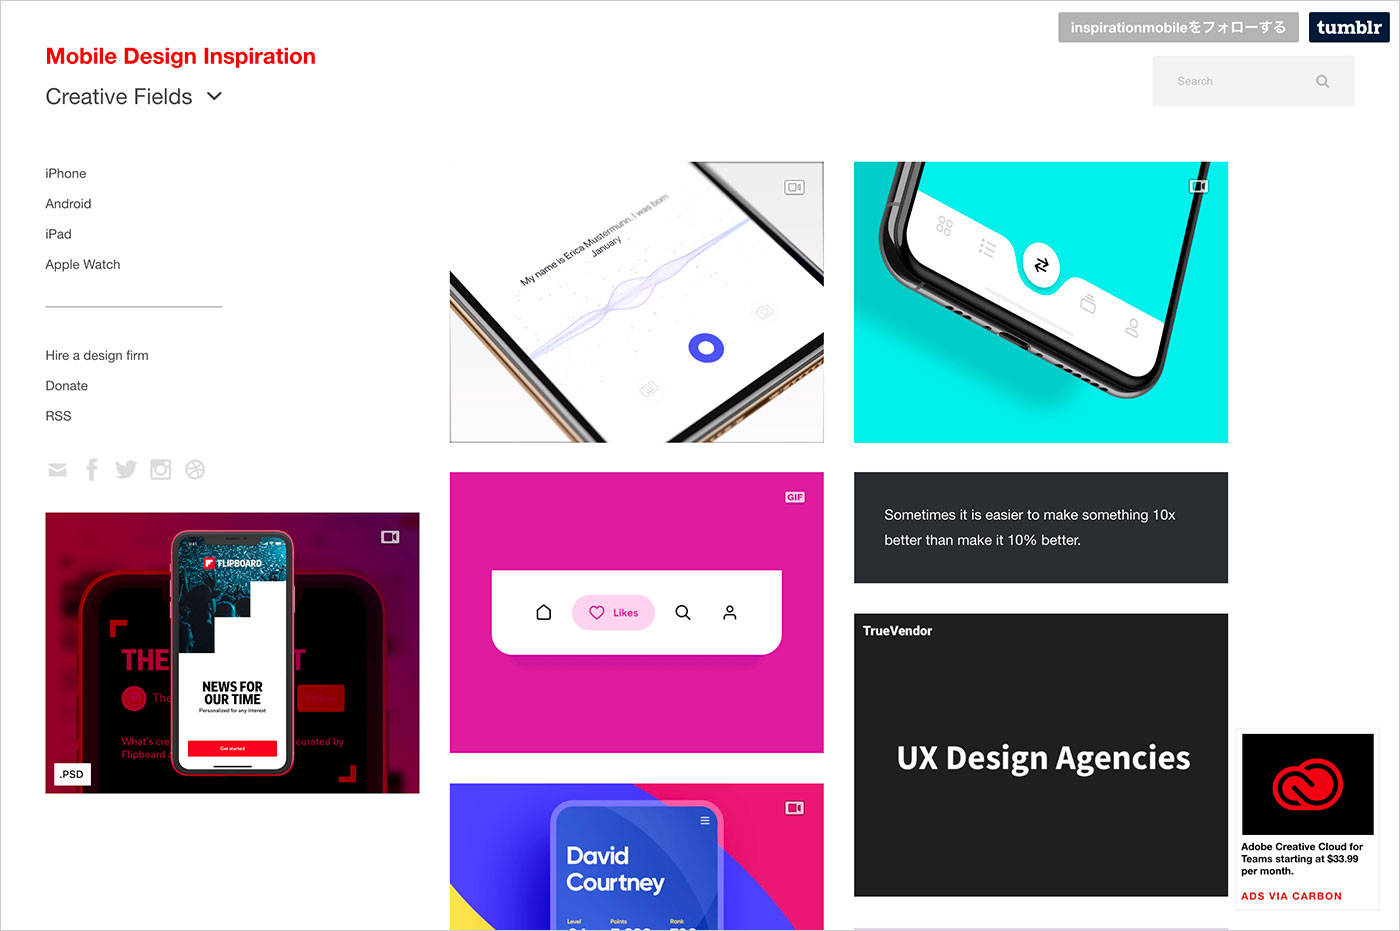 Mobile Design Inspirationウェブサイトの画面キャプチャ画像